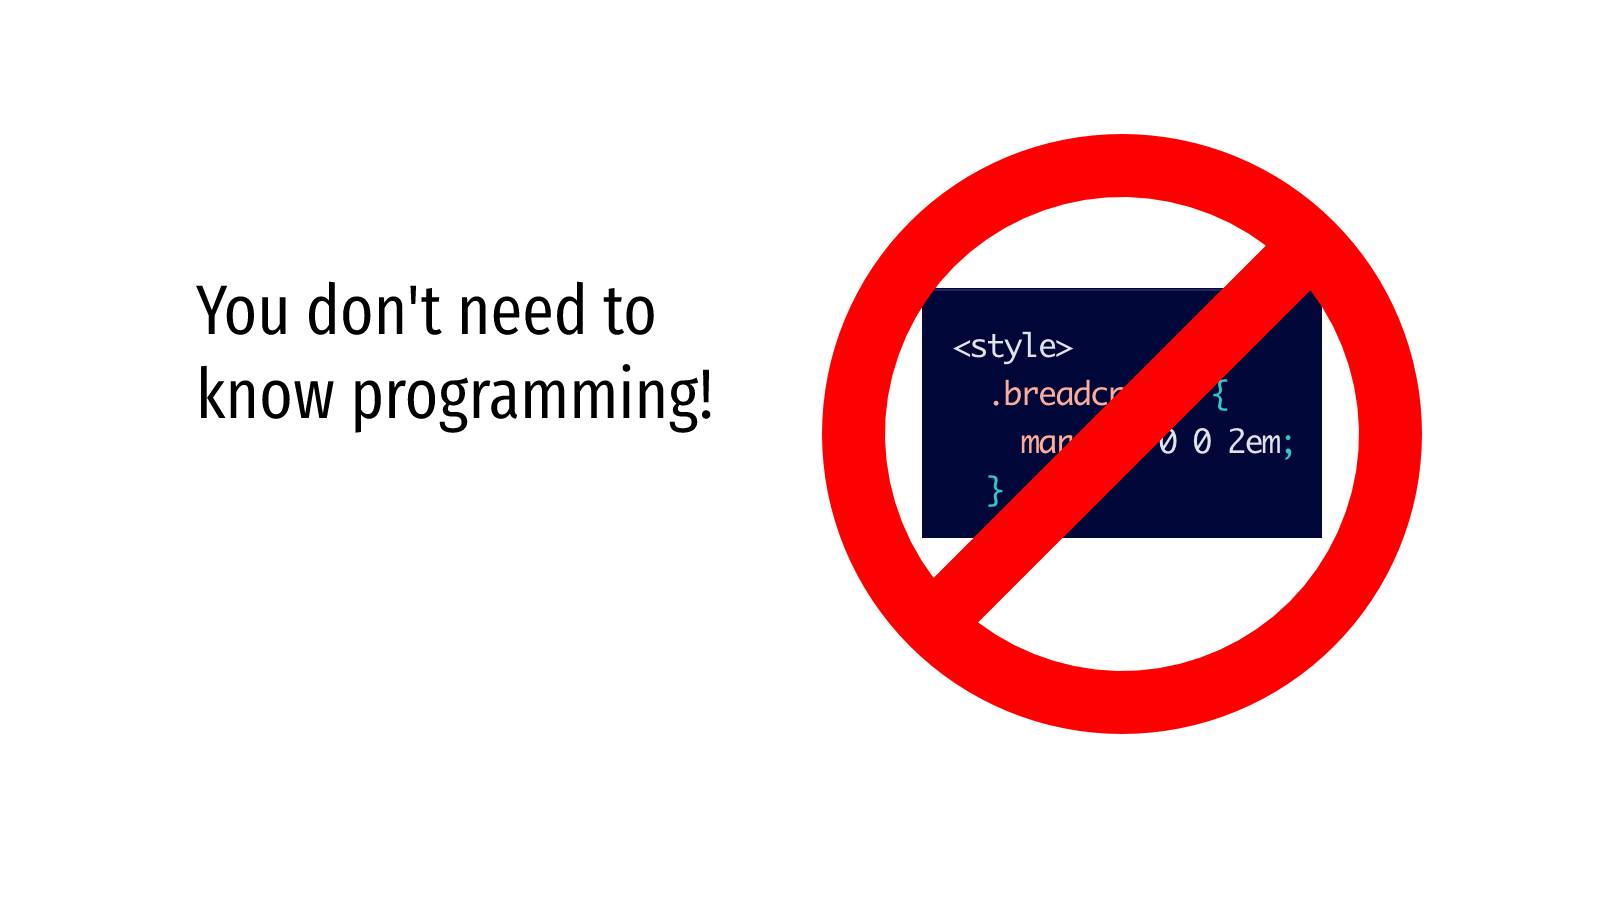 Je hoeft geen programmering te kennen!